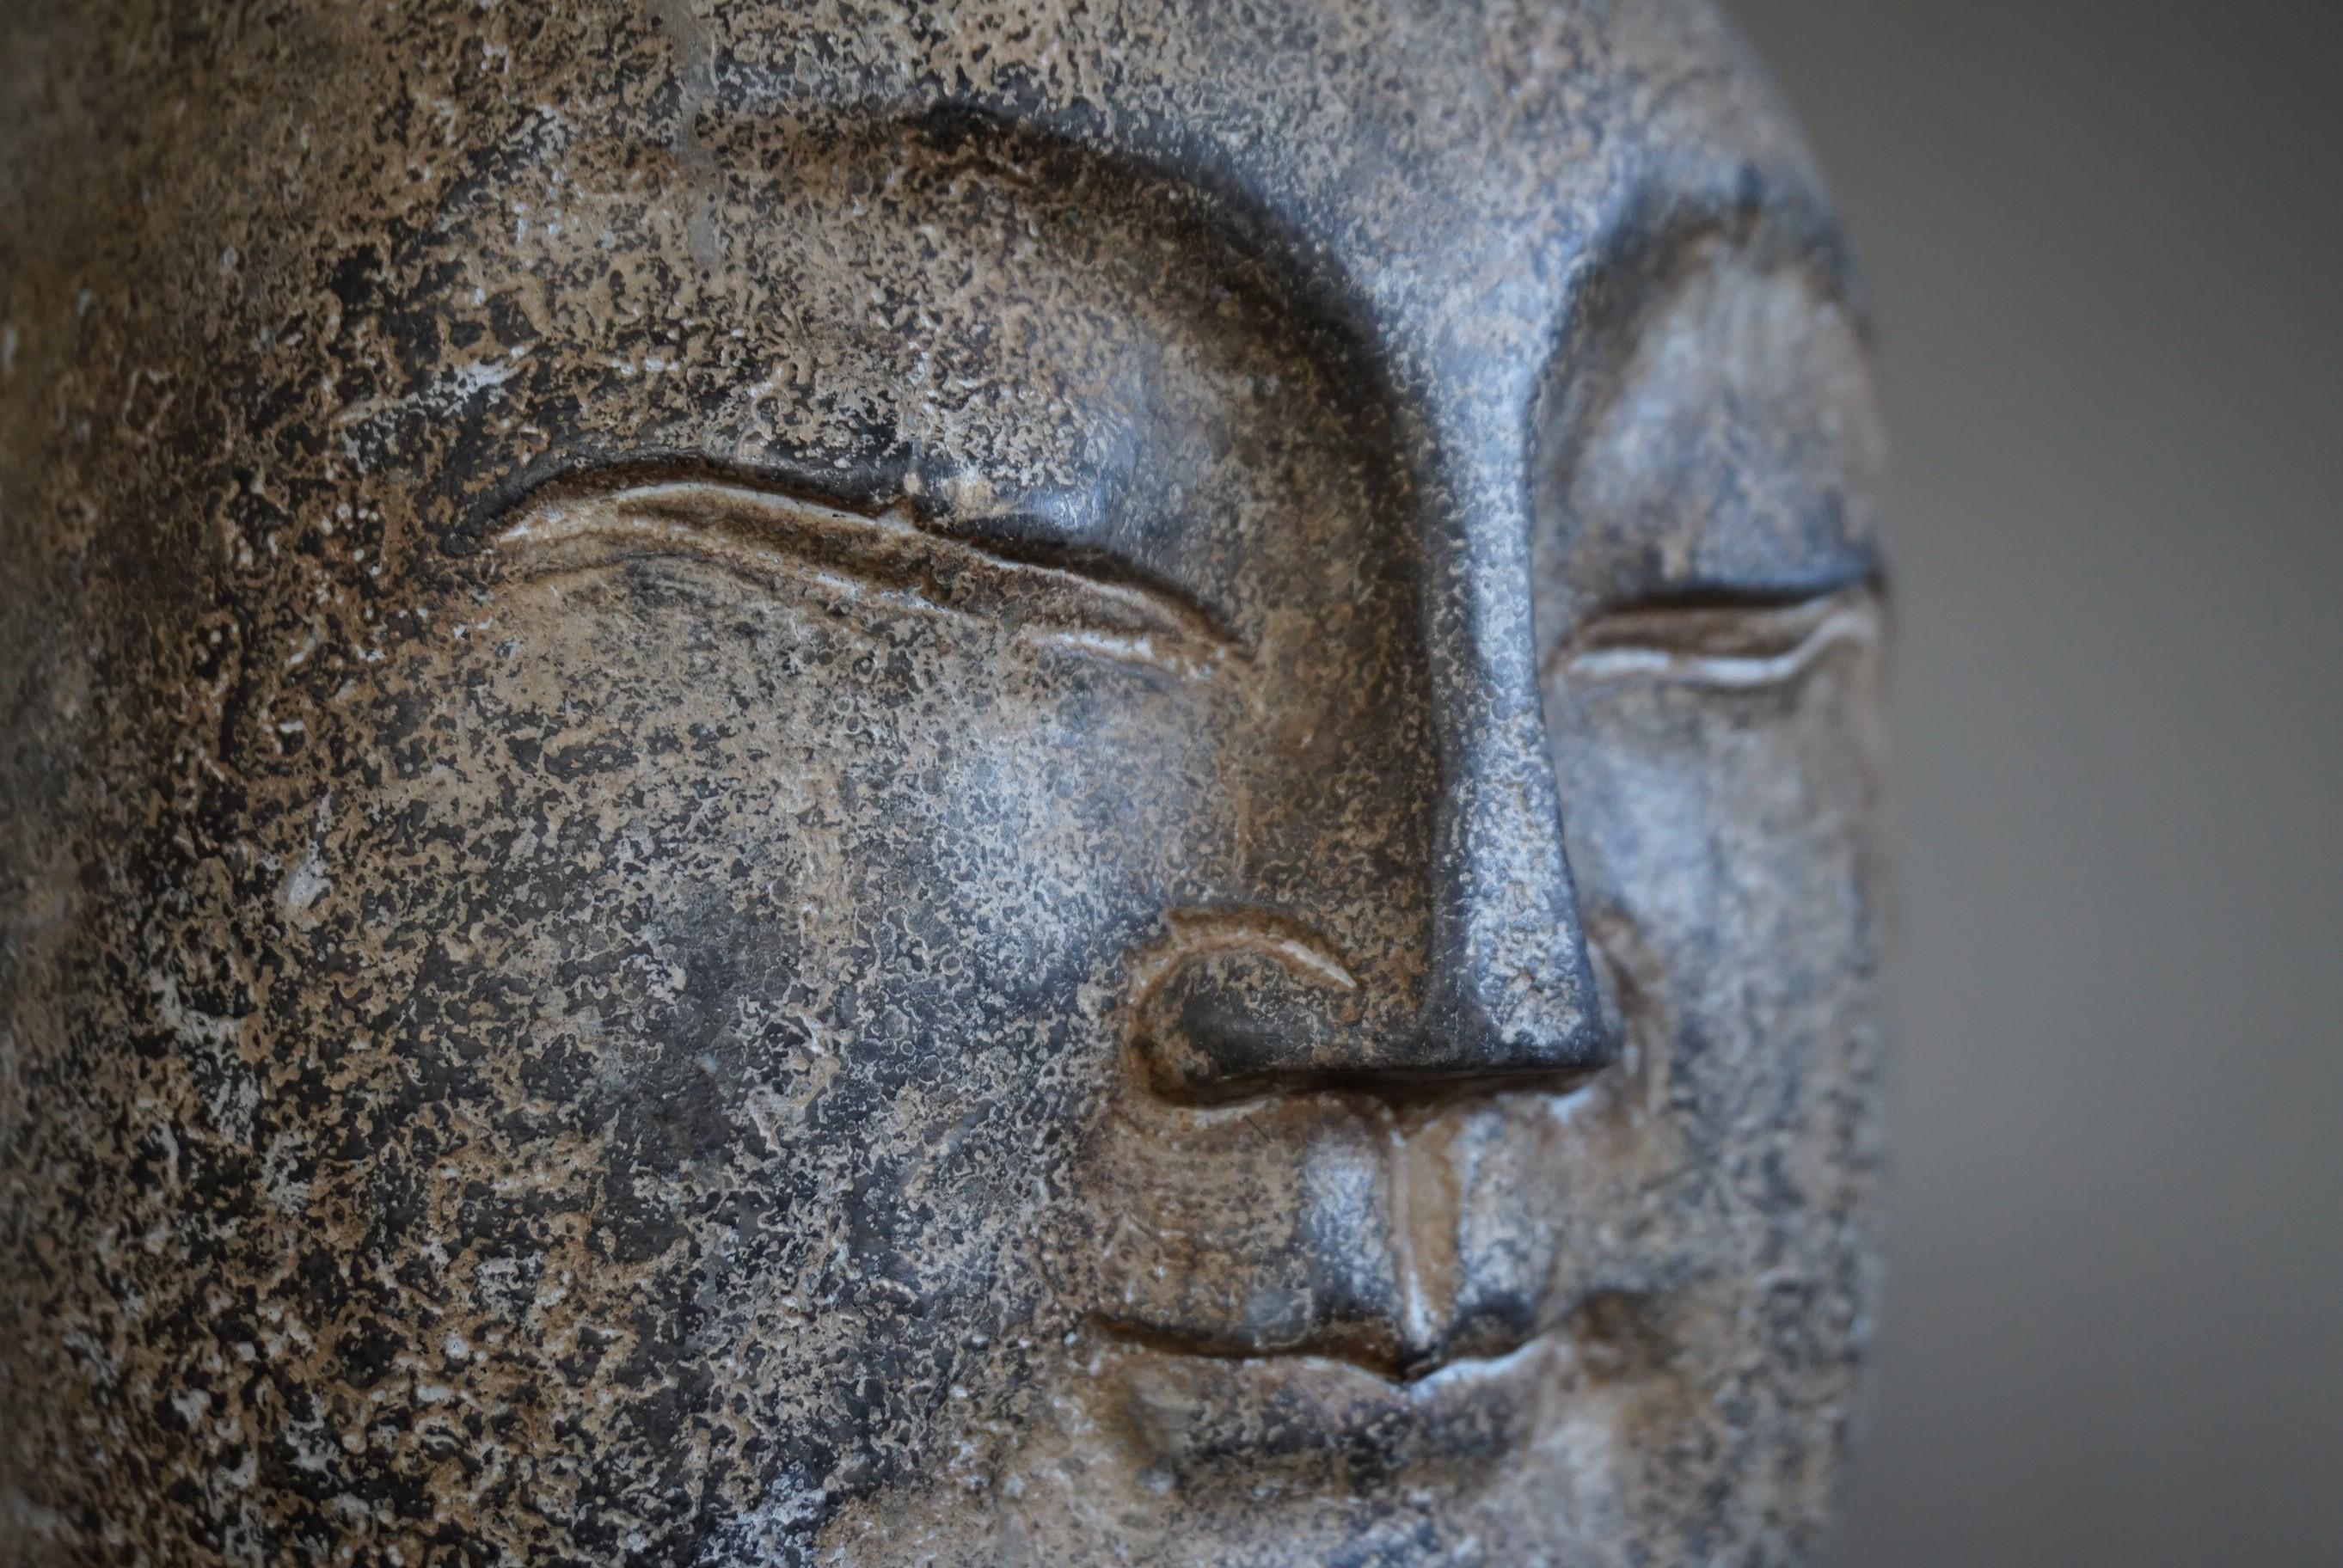 Une sculpture de Bouddha unique en son genre.

Il n'y a que très peu de personnes dans le monde qui peuvent dater avec précision cette sculpture de tête de bouddha japonais en marbre ou en granit, sculptée à la main. Malheureusement, nous ne